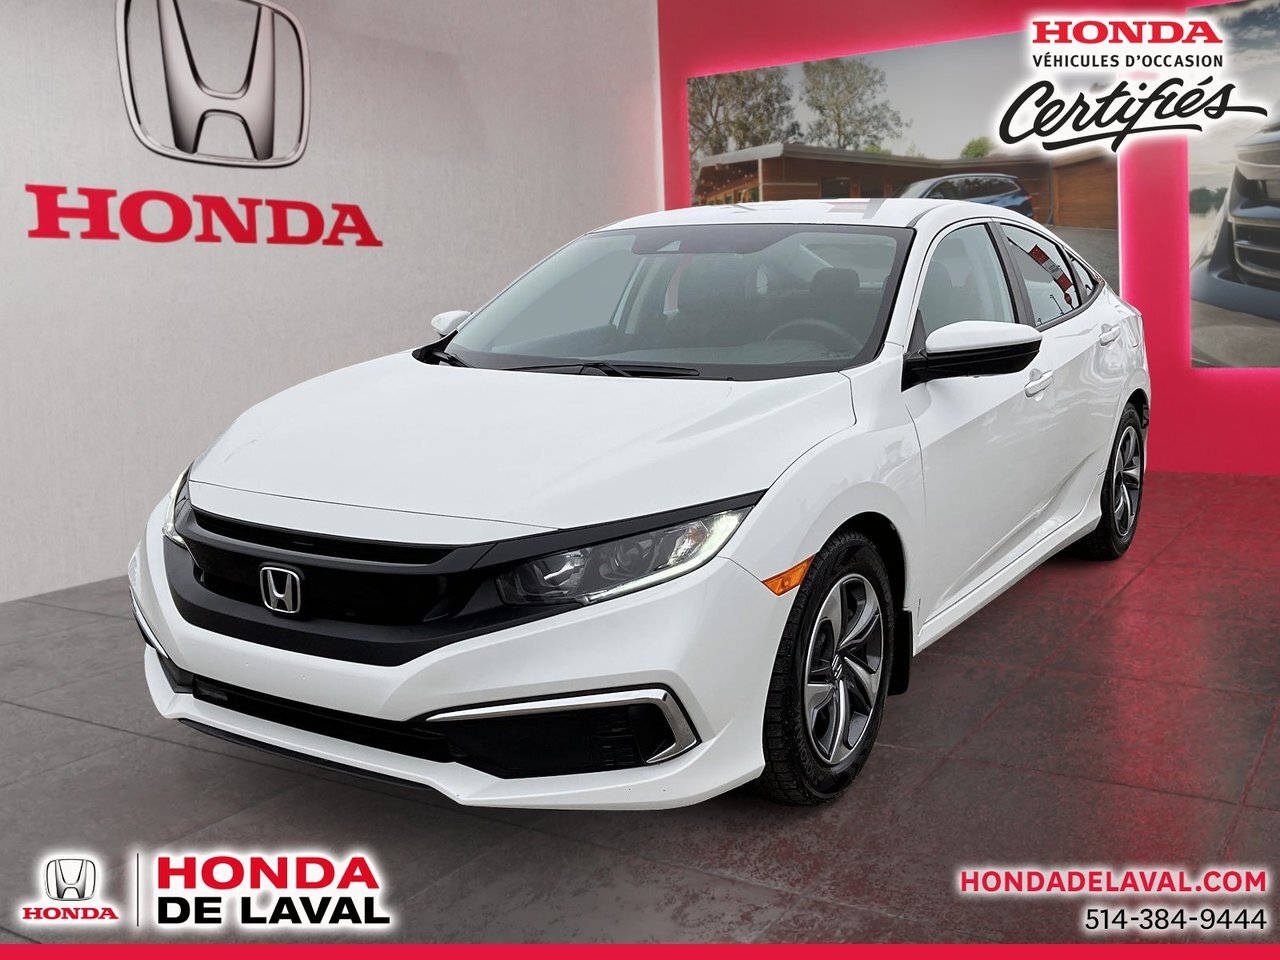 2020 Honda Civic LX GARANTIE 7/160 HONDA